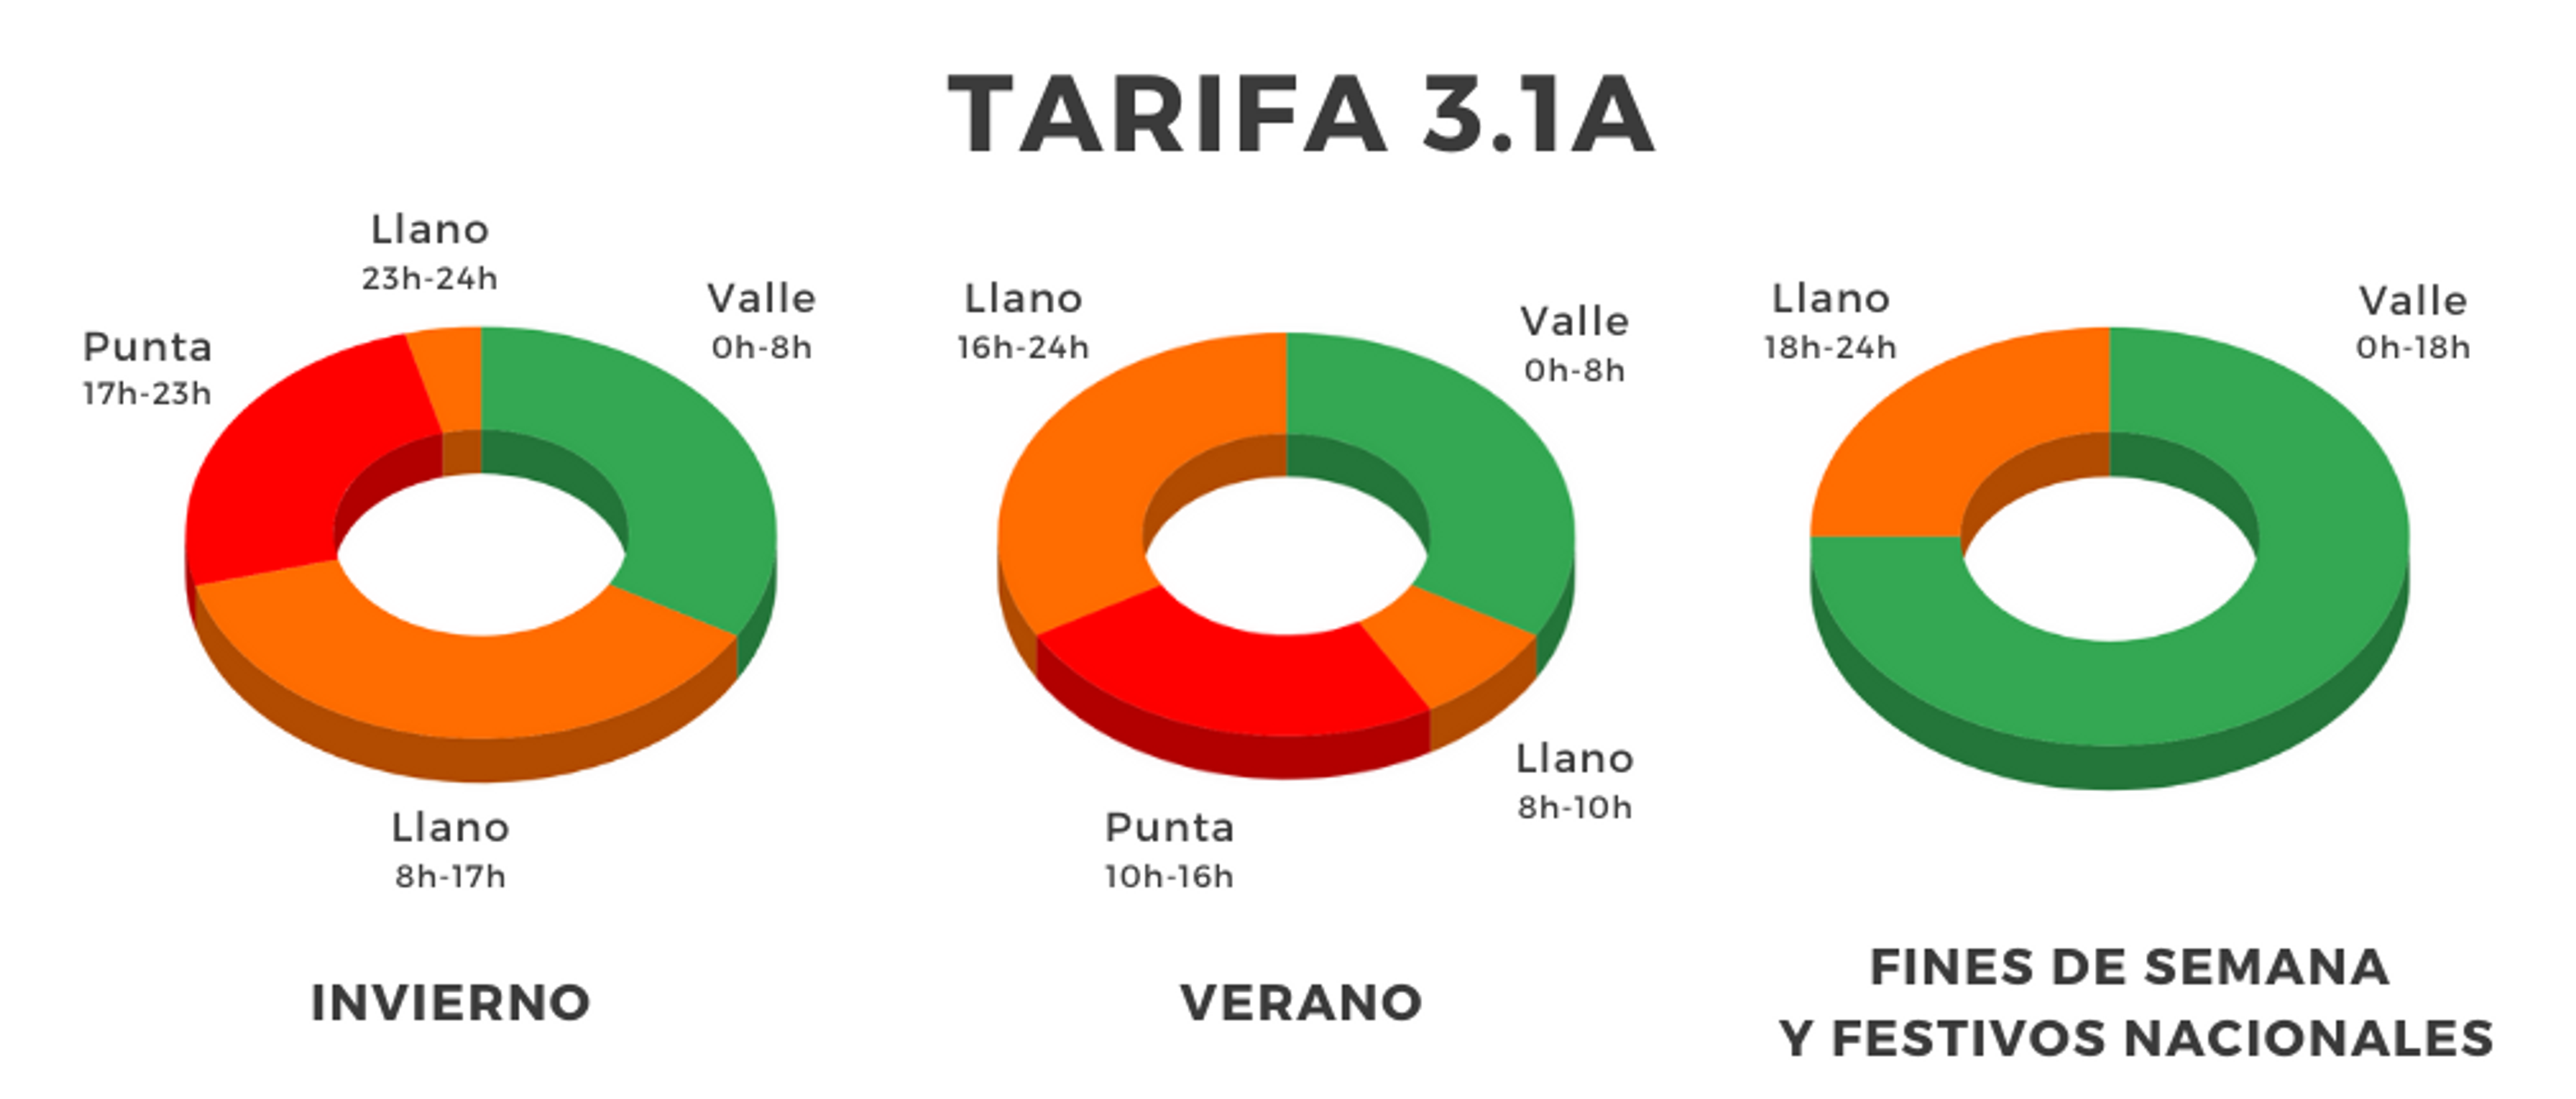 Tarifa3.1